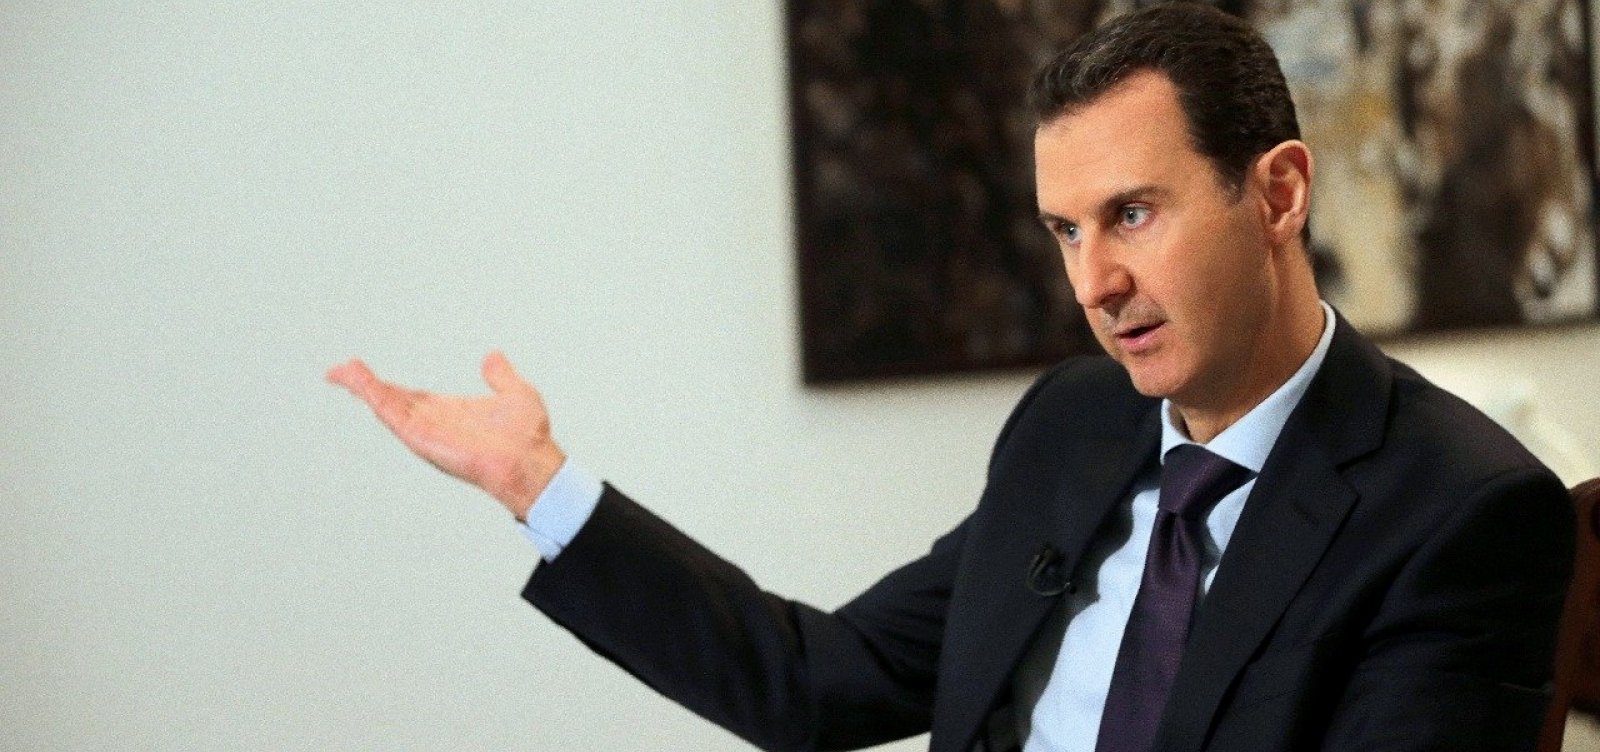 Assad é denunciado pela ONU por ataques químicos e crimes de guerra